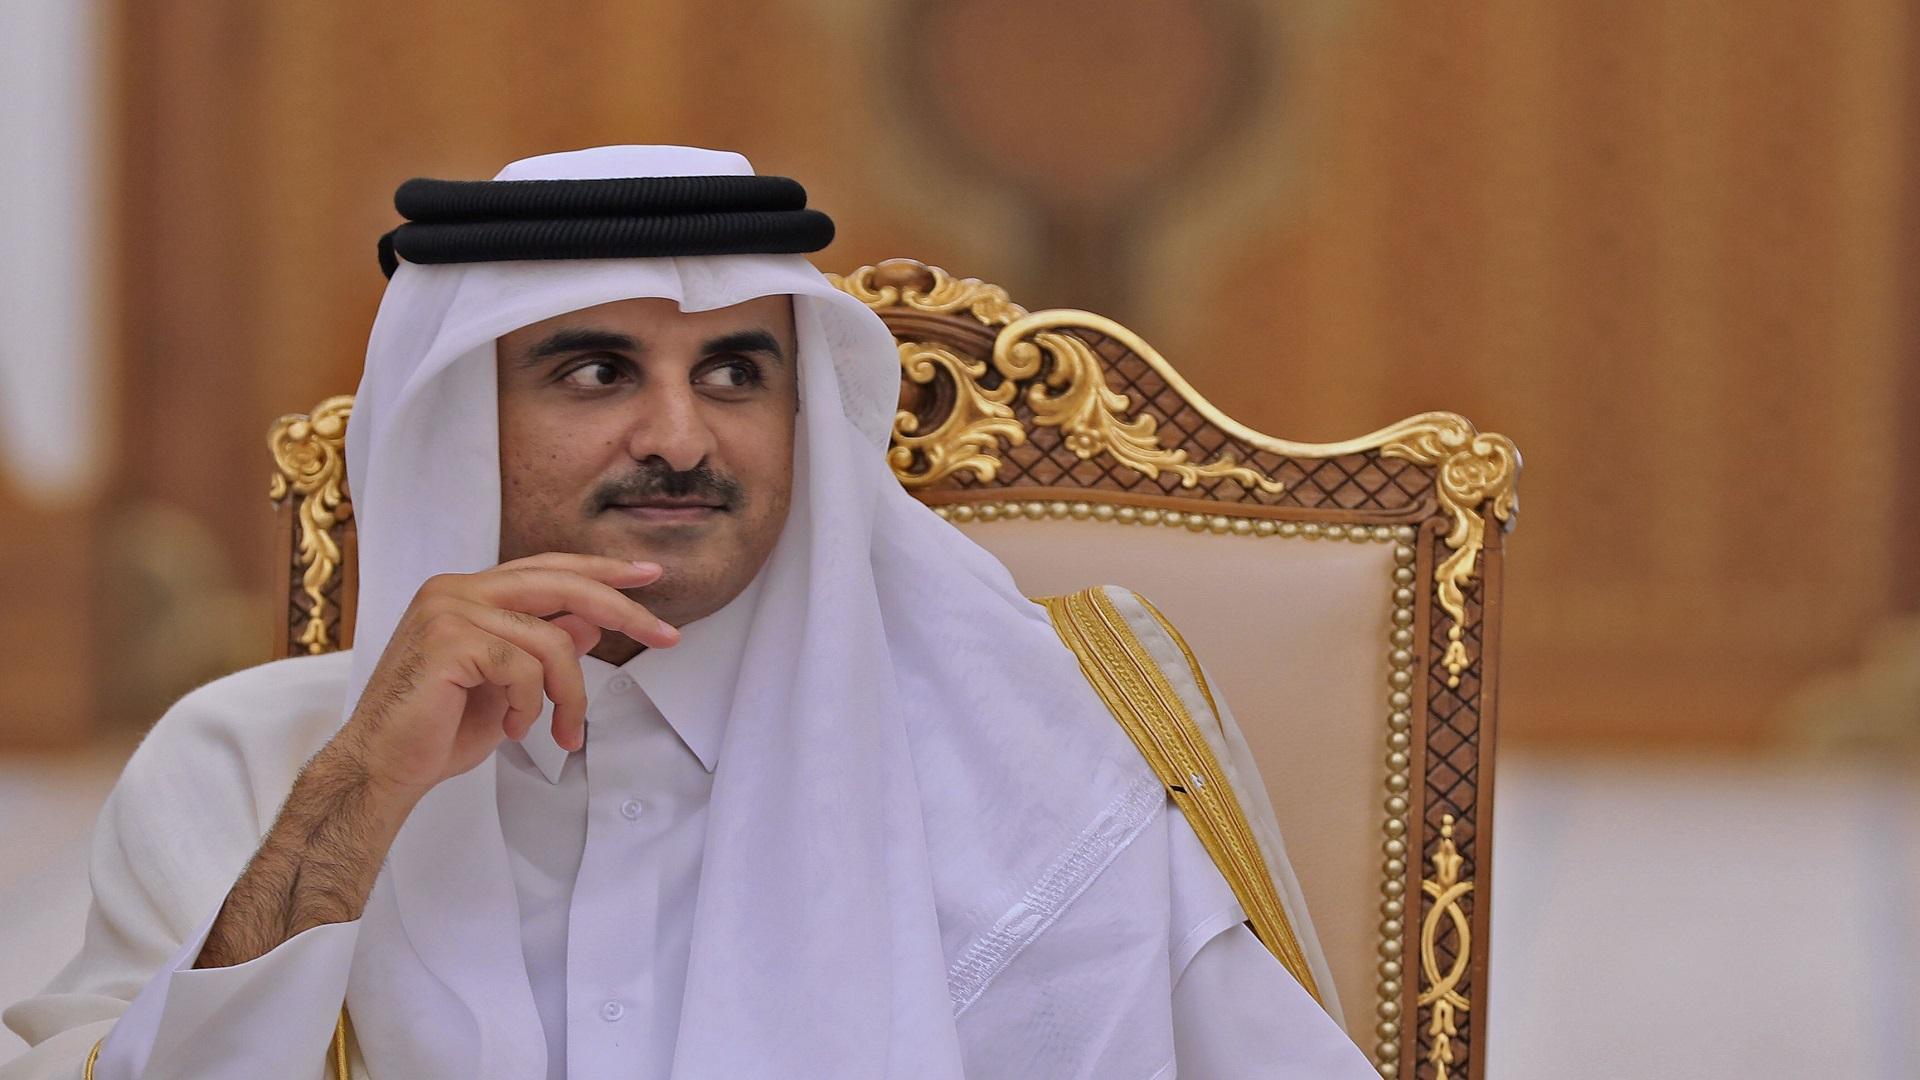 امير قطر يتحدث عن فشل مجلس التعاون والحرب في سوريا واليمن